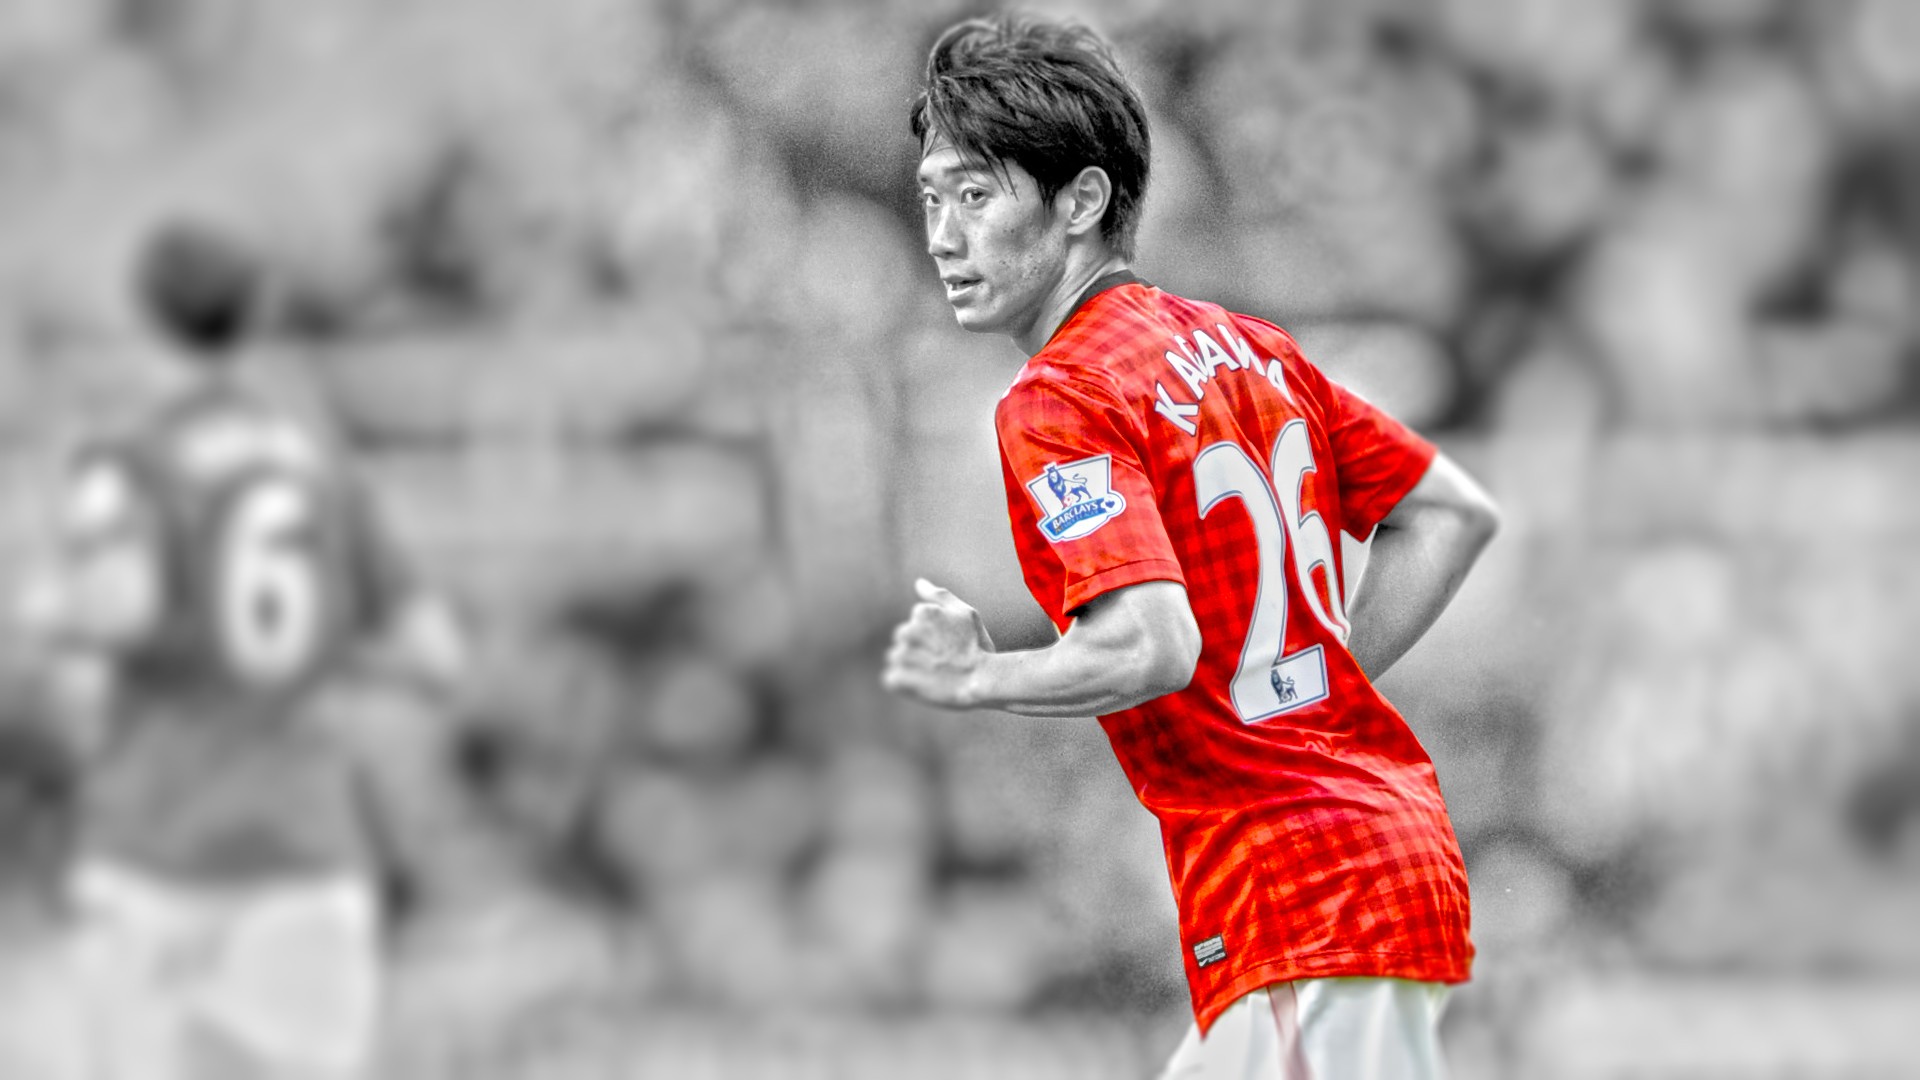 Descarga gratuita de fondo de pantalla para móvil de Fútbol, Deporte, Manchester United F C, Shinji Kagawa.